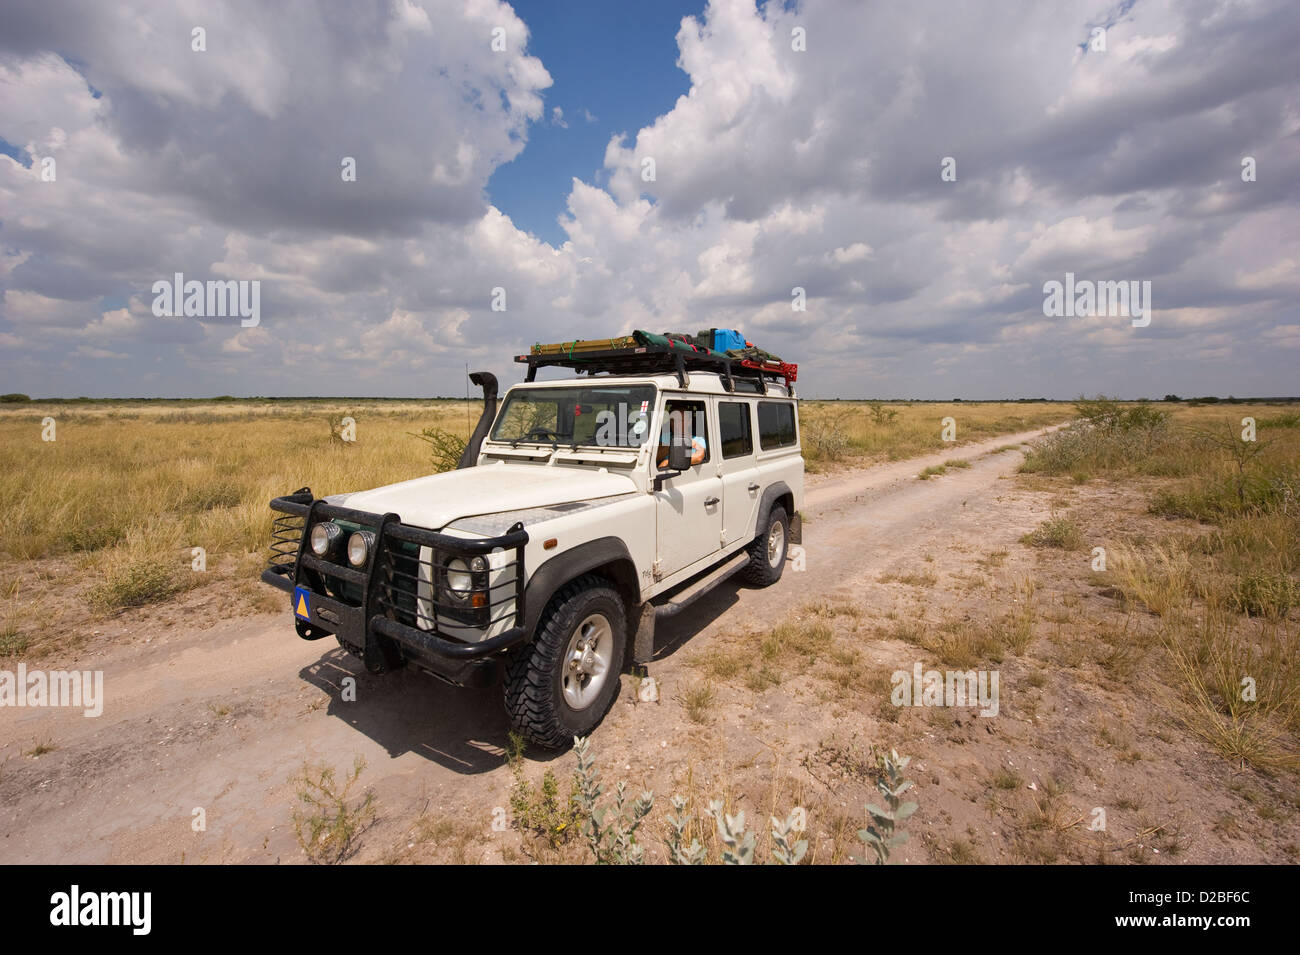 Landrover on safari in Botswana Stock Photo